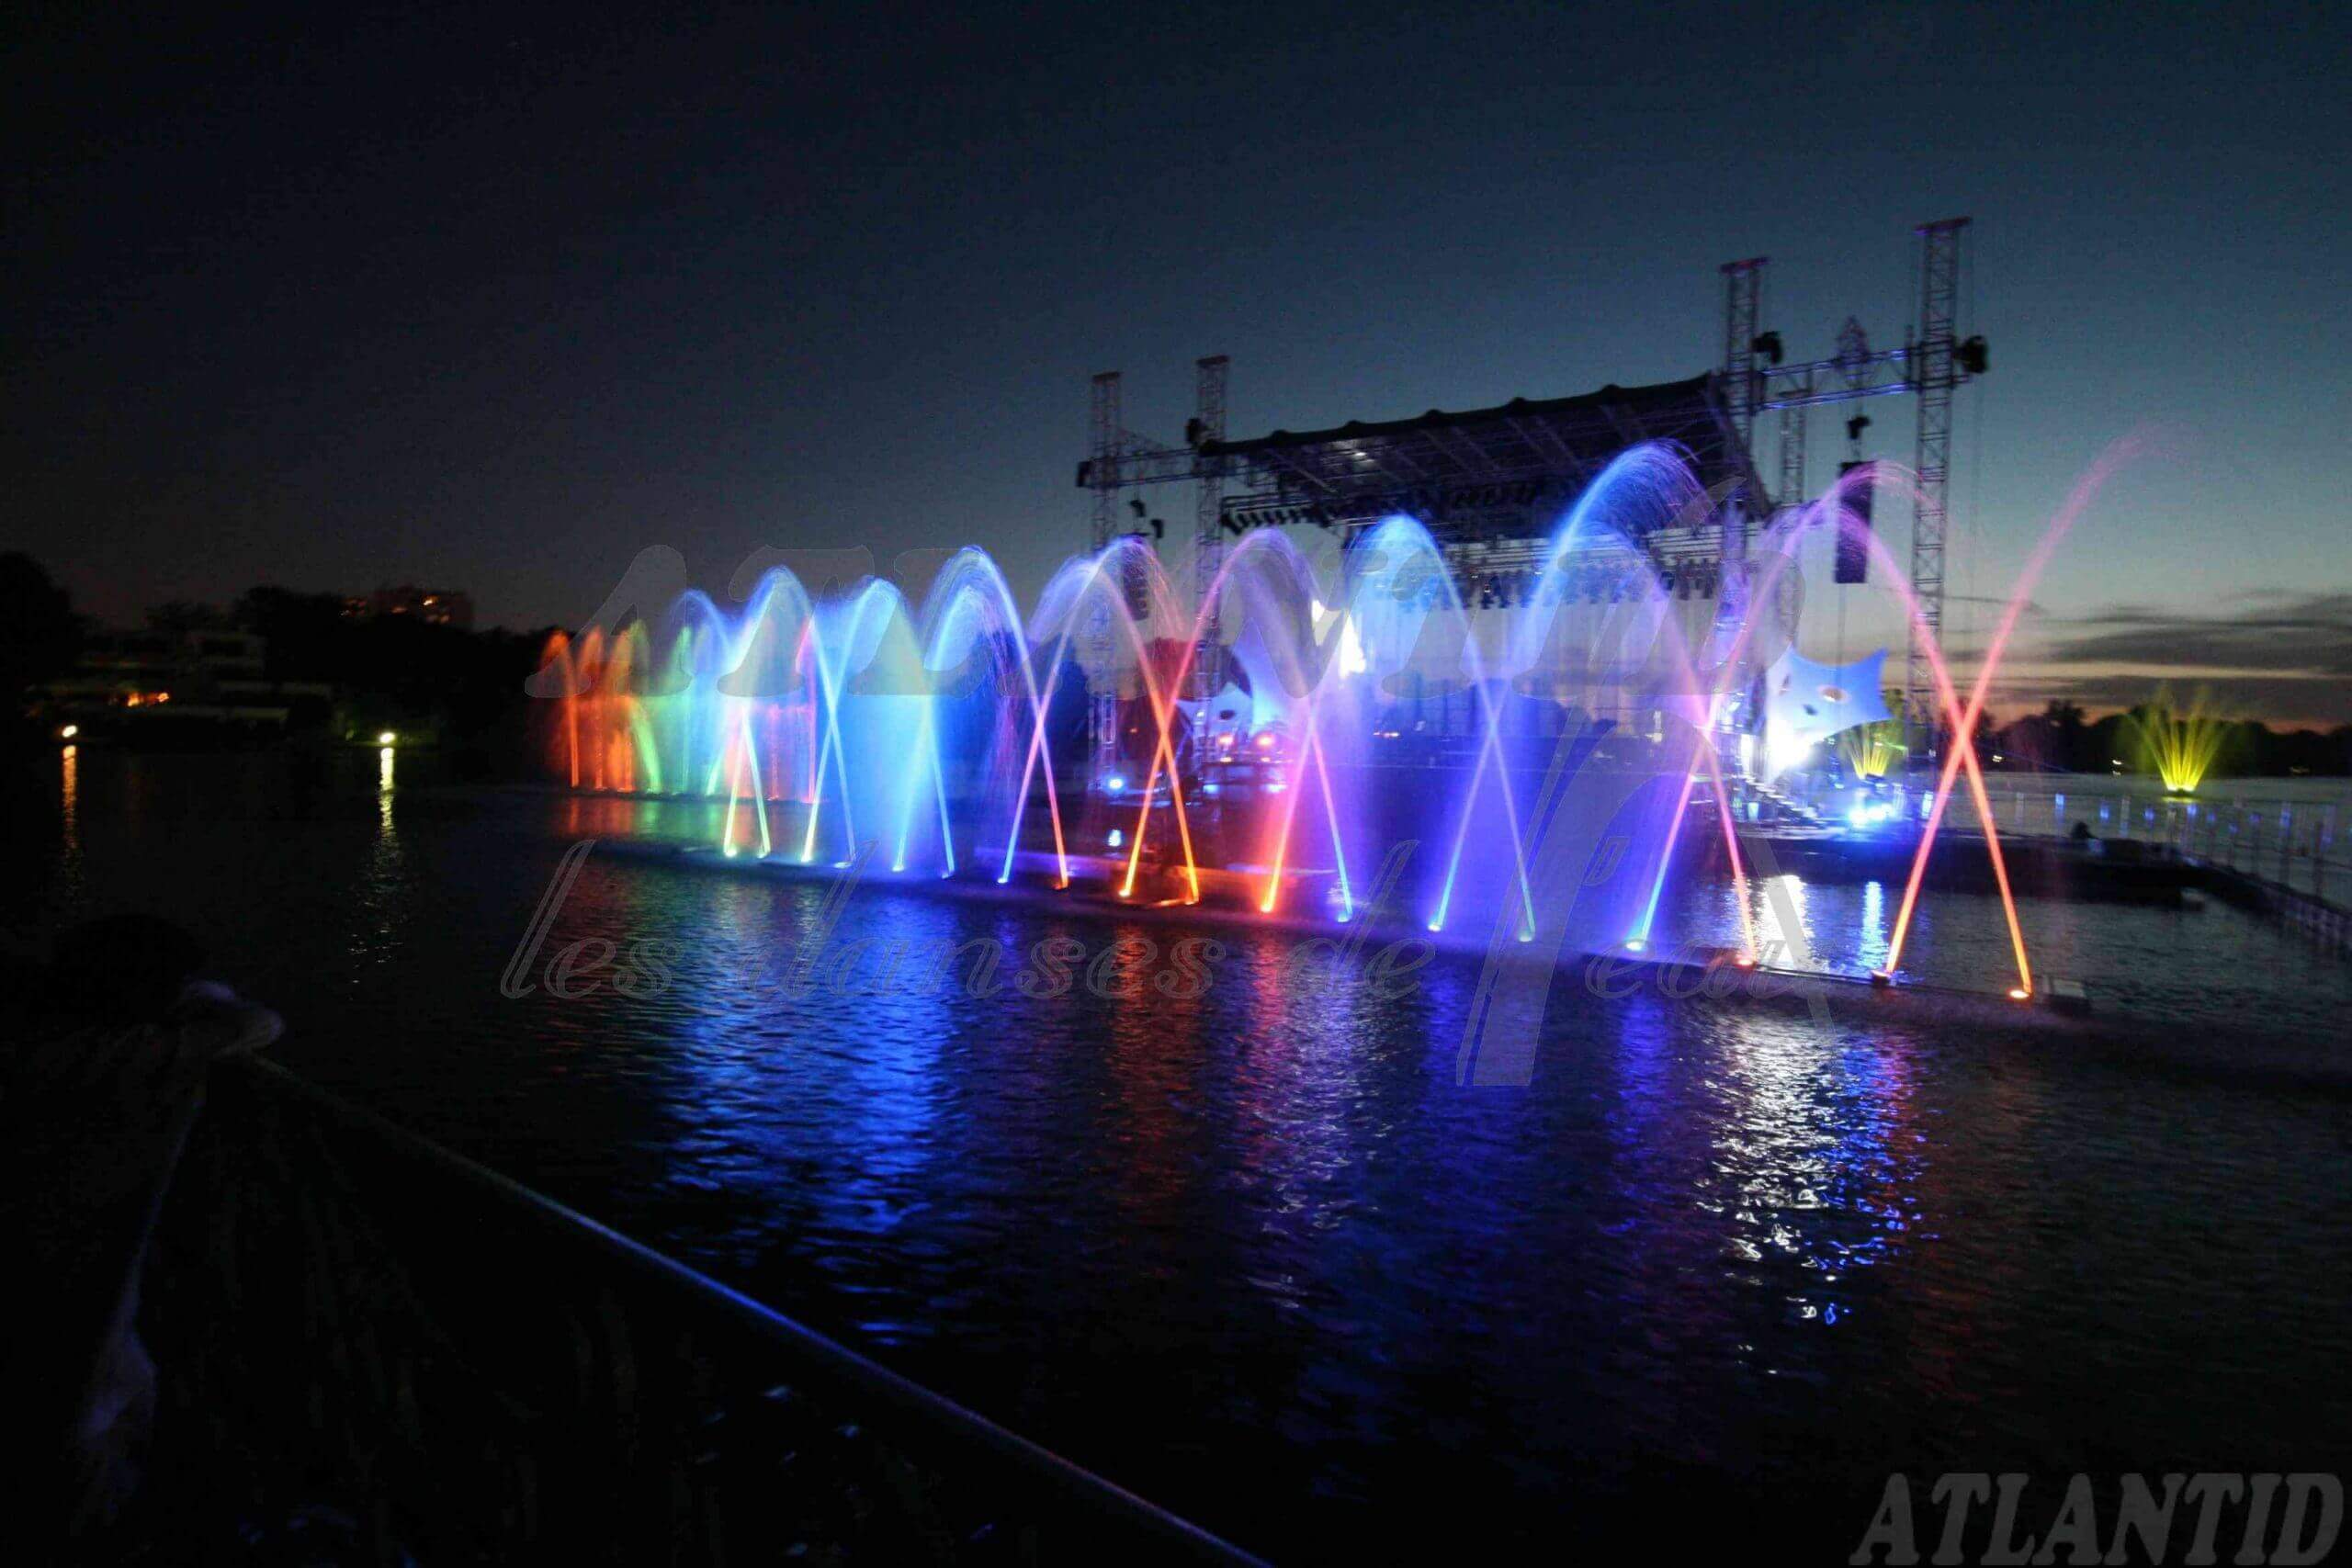 Atlantid - Espectáculos personalizados - Escena con chorros de agua multicolores al frente.